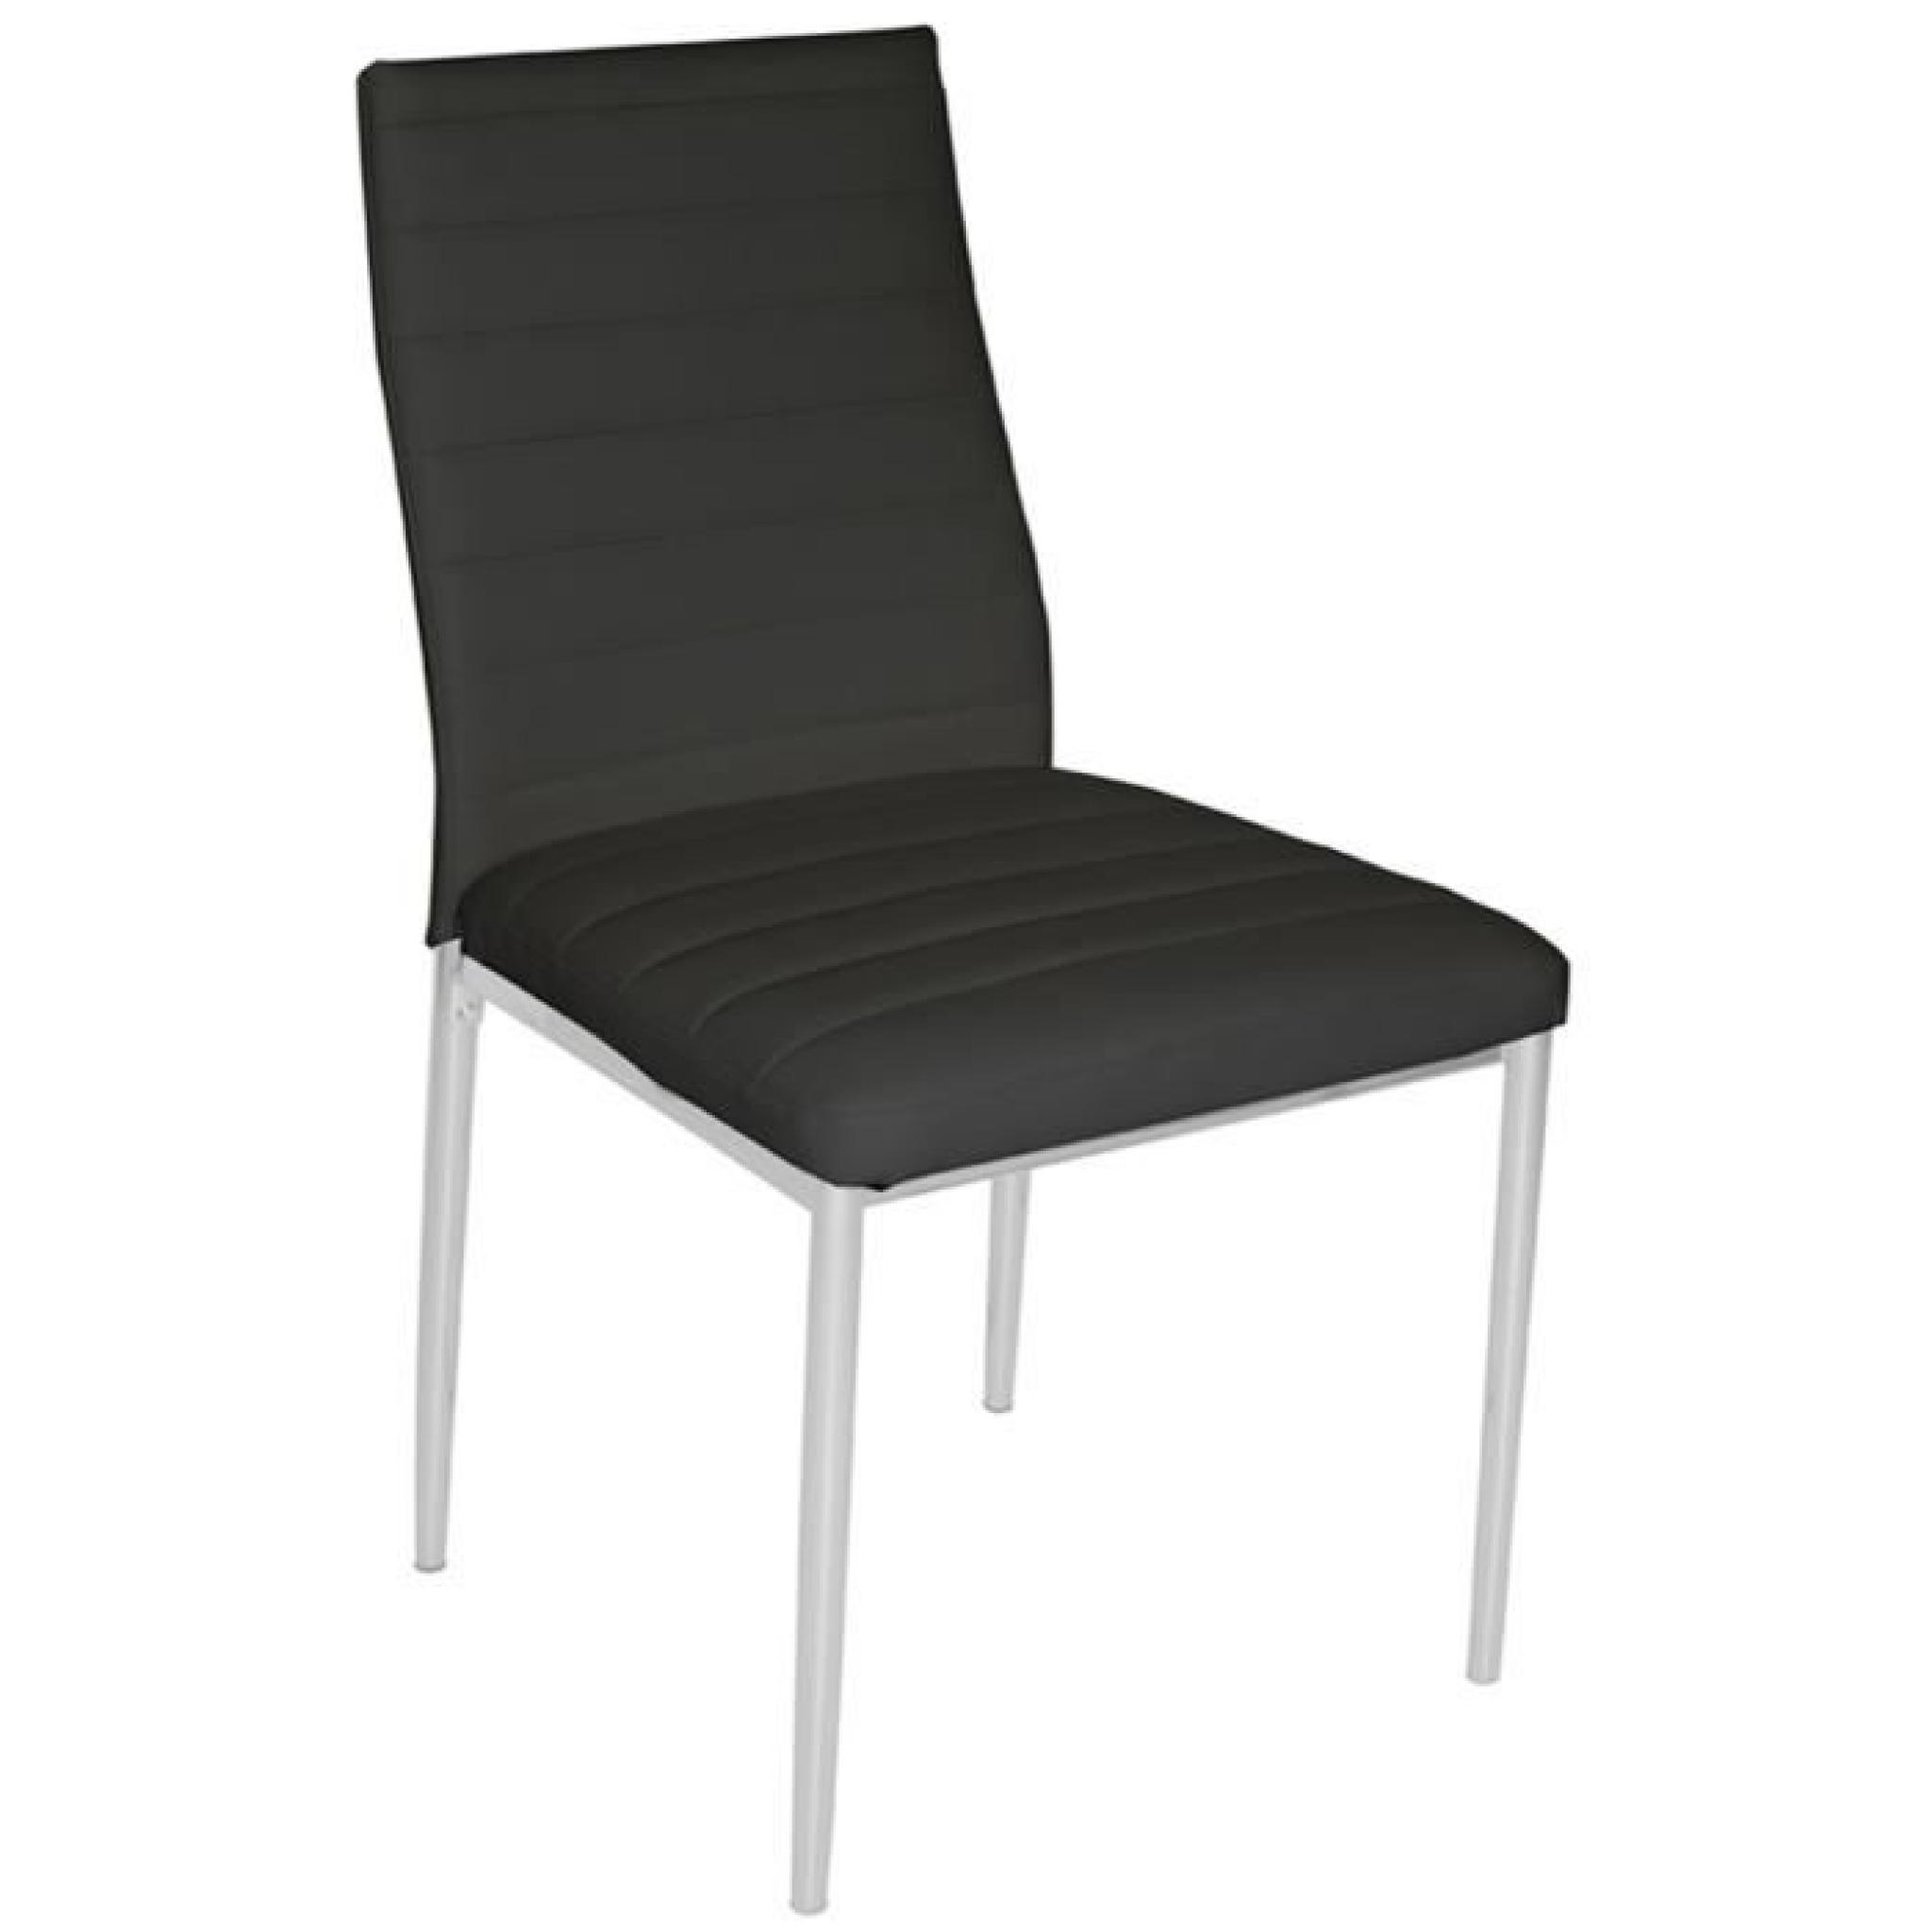 Chaise de salon noir pieds en acier gris structure en polyester, Dim : 43 x 40,5 x 93 cm -PEGANE